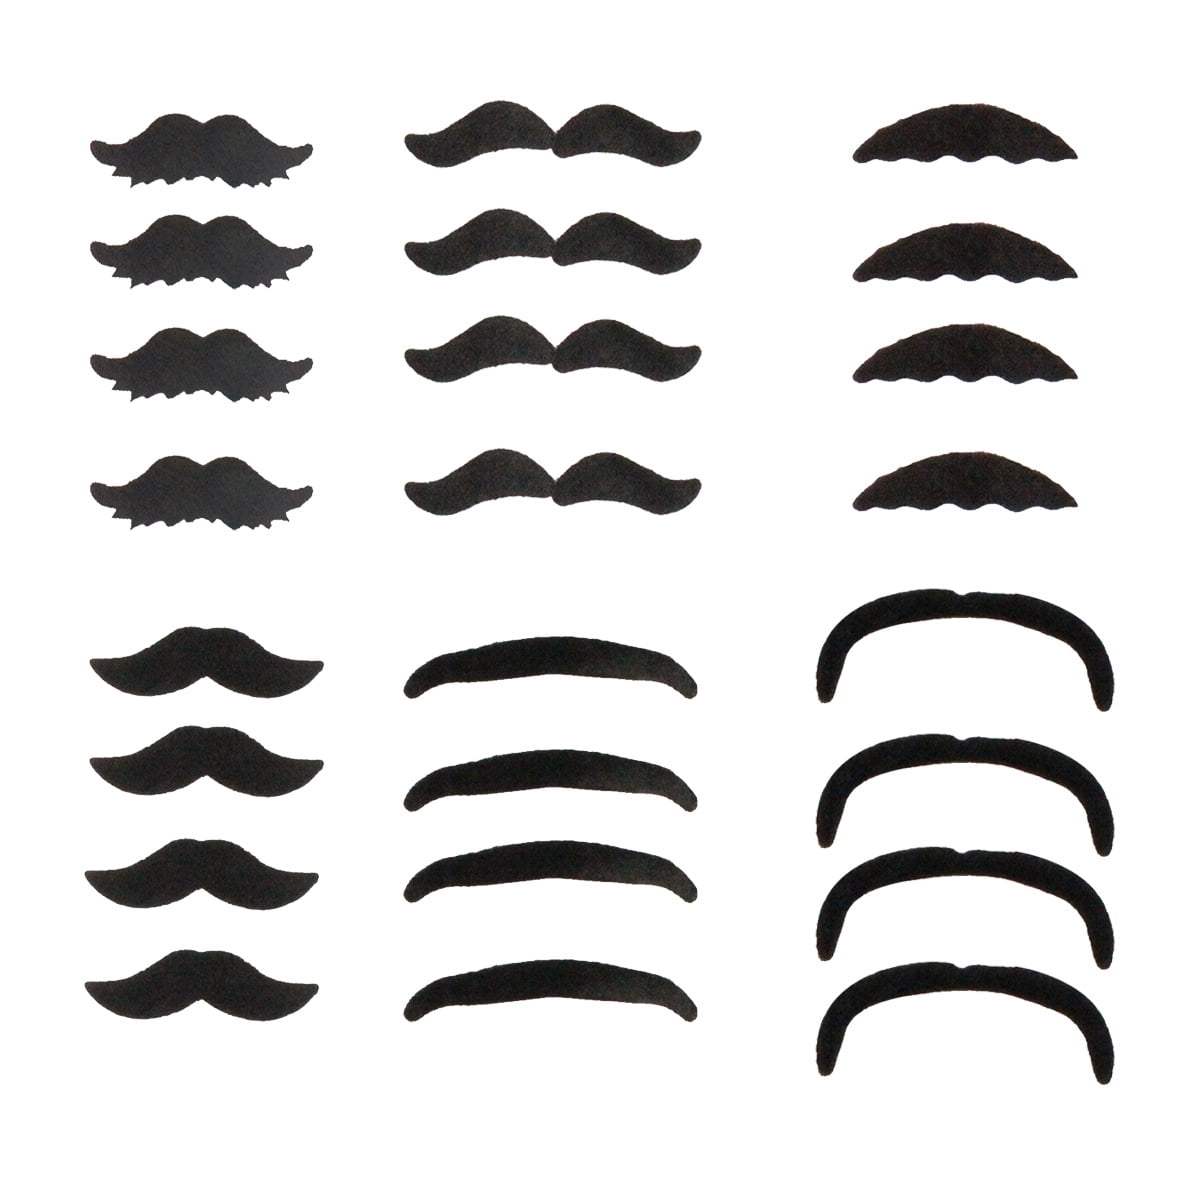 ZHENMEILI Black Sticker Mustache Novelty Funny Beard Toy 